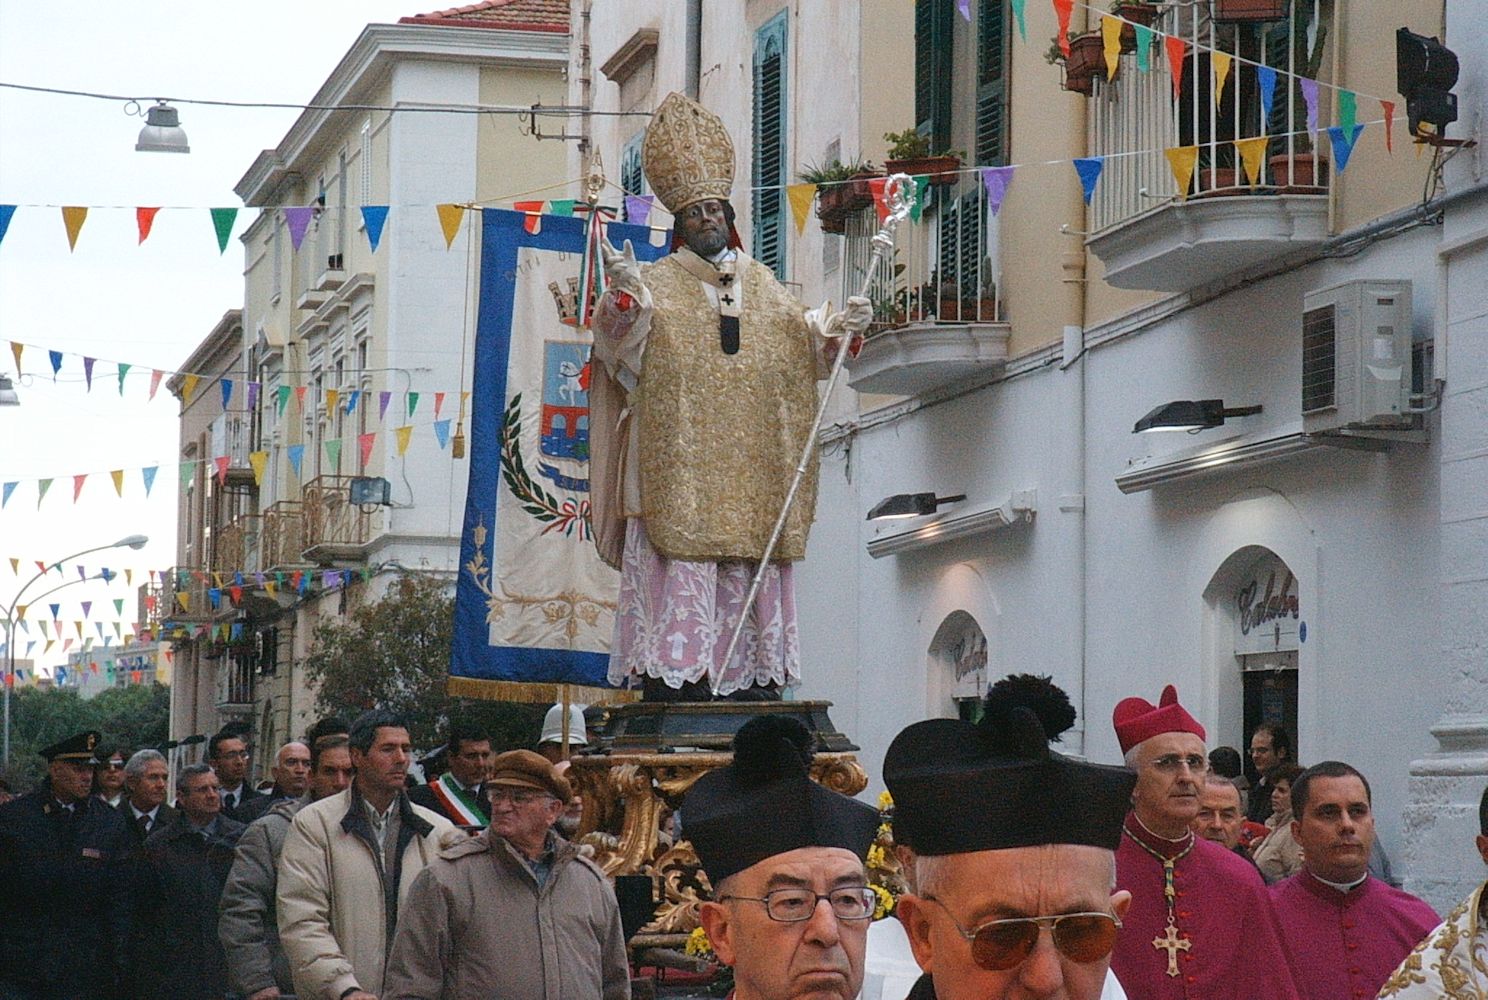 Prozession in Manfredonia zu Ehren von Laurentius am 7. Februar 2005